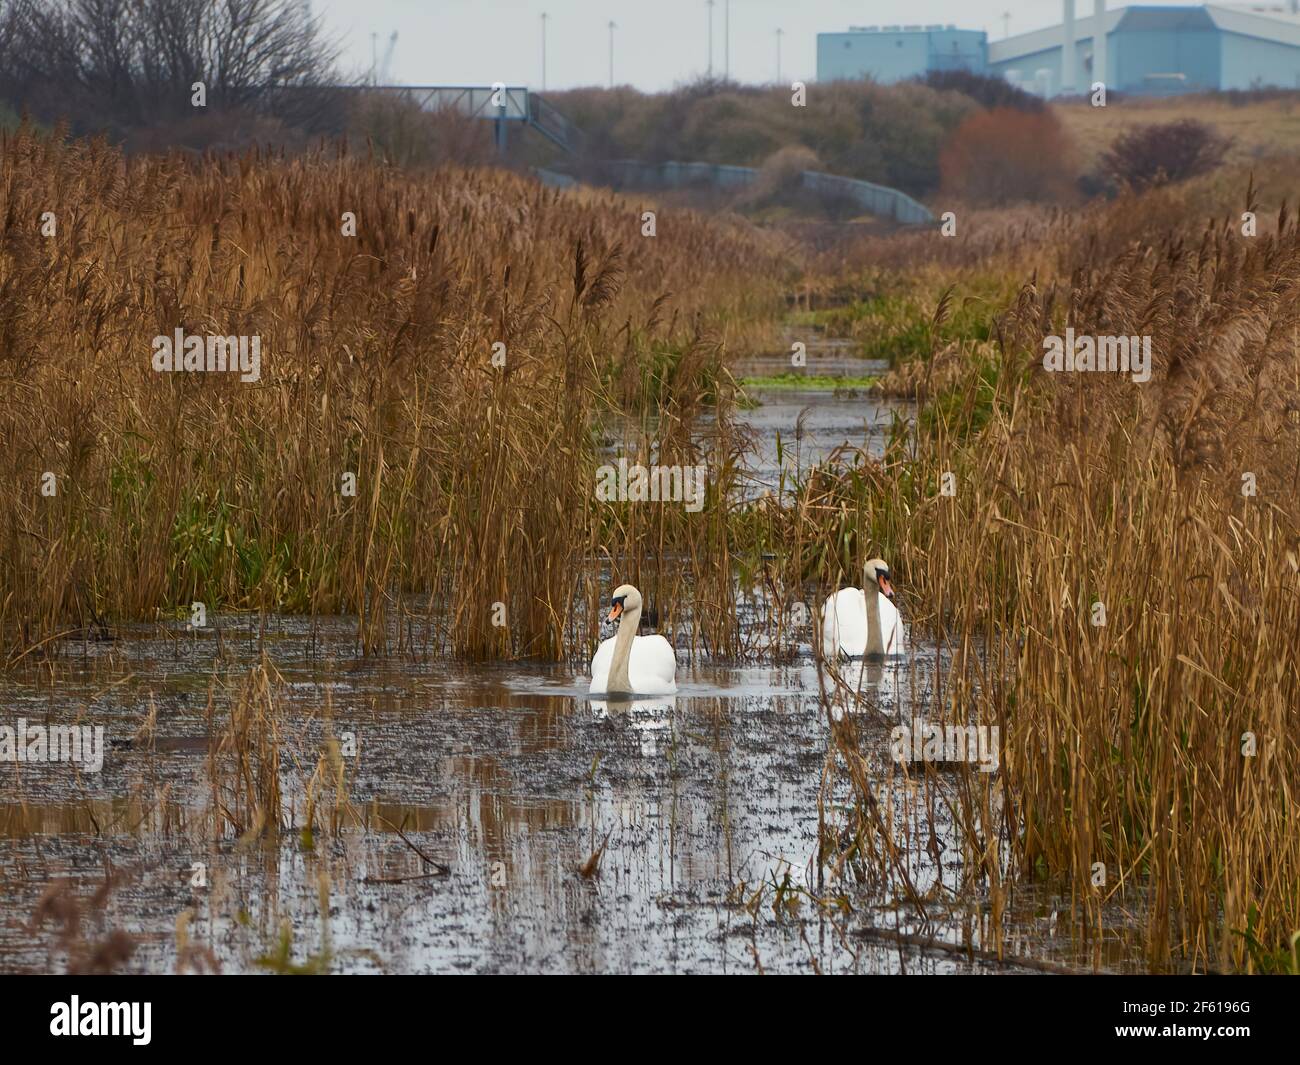 La industria y la naturaleza co-existentes - los cisnes nadan a través de las aguas tranquilas, llenas de caña de un arroyo con una instalación industrial en el horizonte lejano. Foto de stock